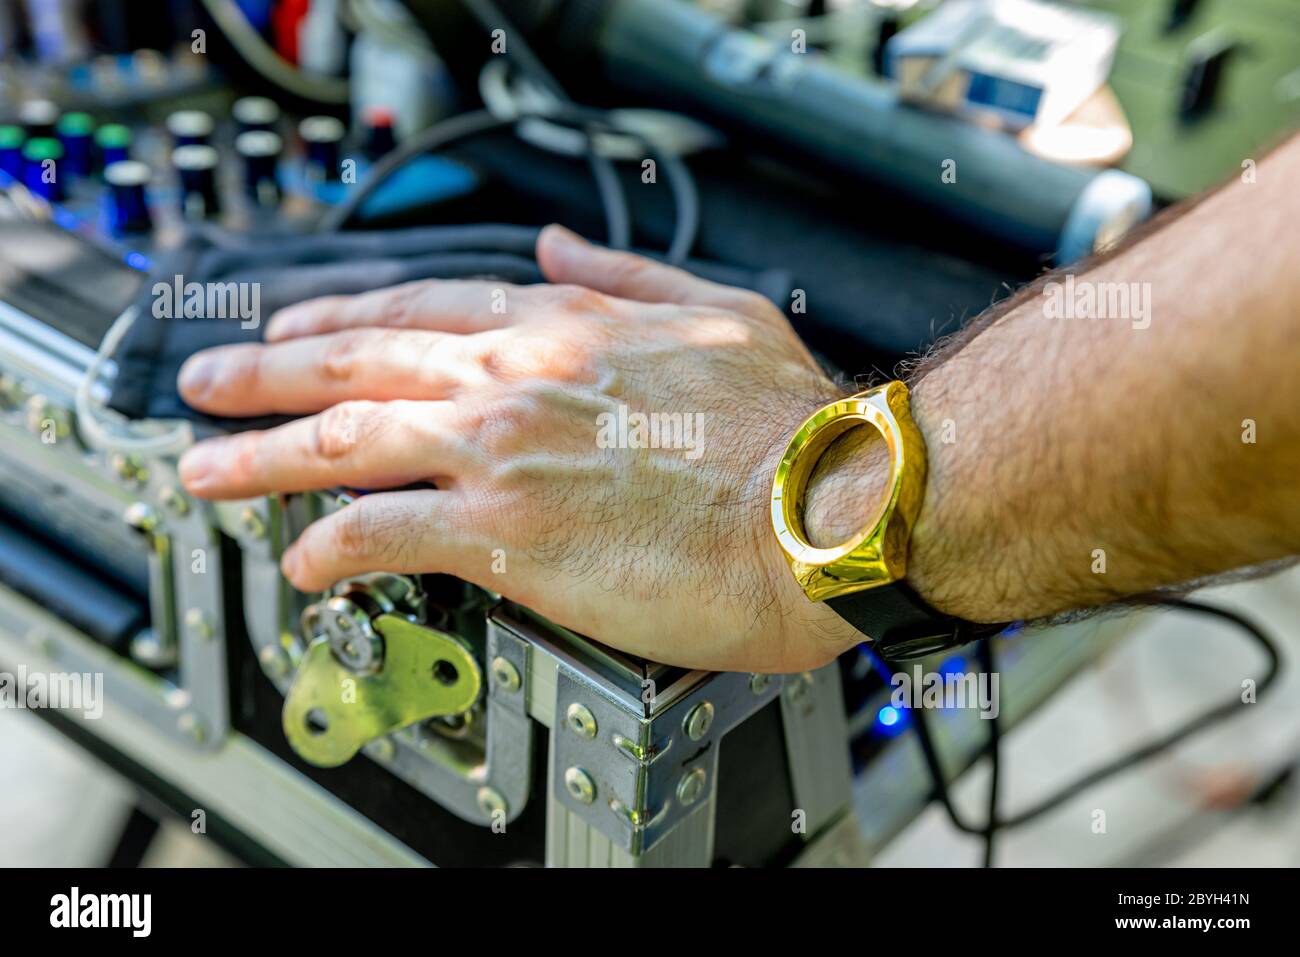 Pontelatone, Italia. 7 Giugno 2020. Mano e braccio di un uomo vicino a una console DJ e indossare un orologio senza un quadrante. Foto Stock